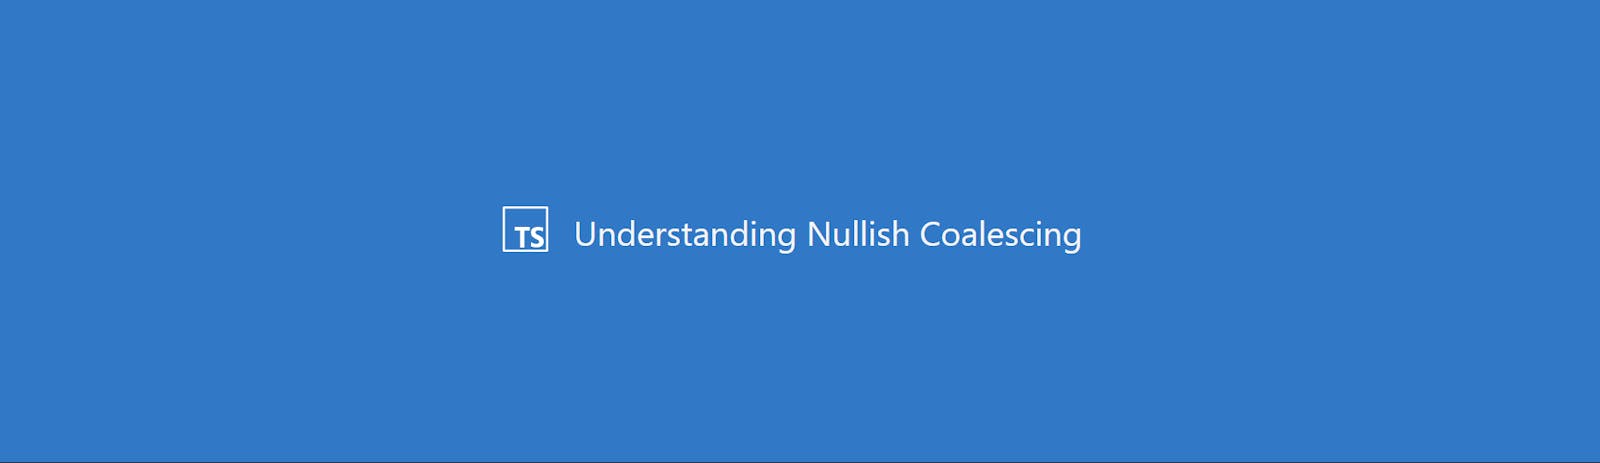 Understanding Nullish Coalescing in Typescript